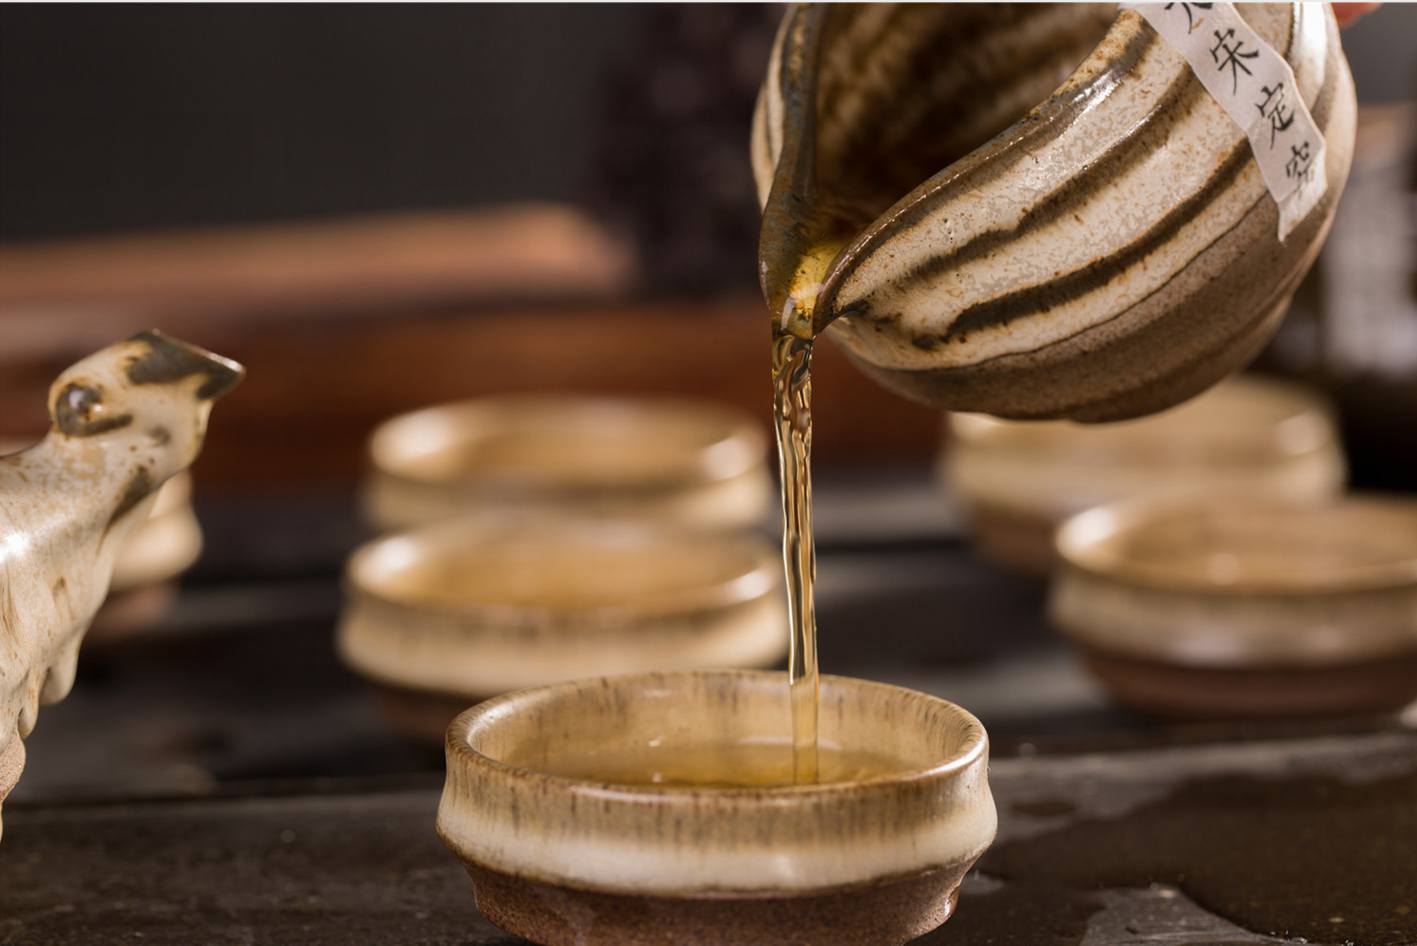 粗瓷茶具-大宋定窑行云流水套装中的茶壶冲出的茶汤